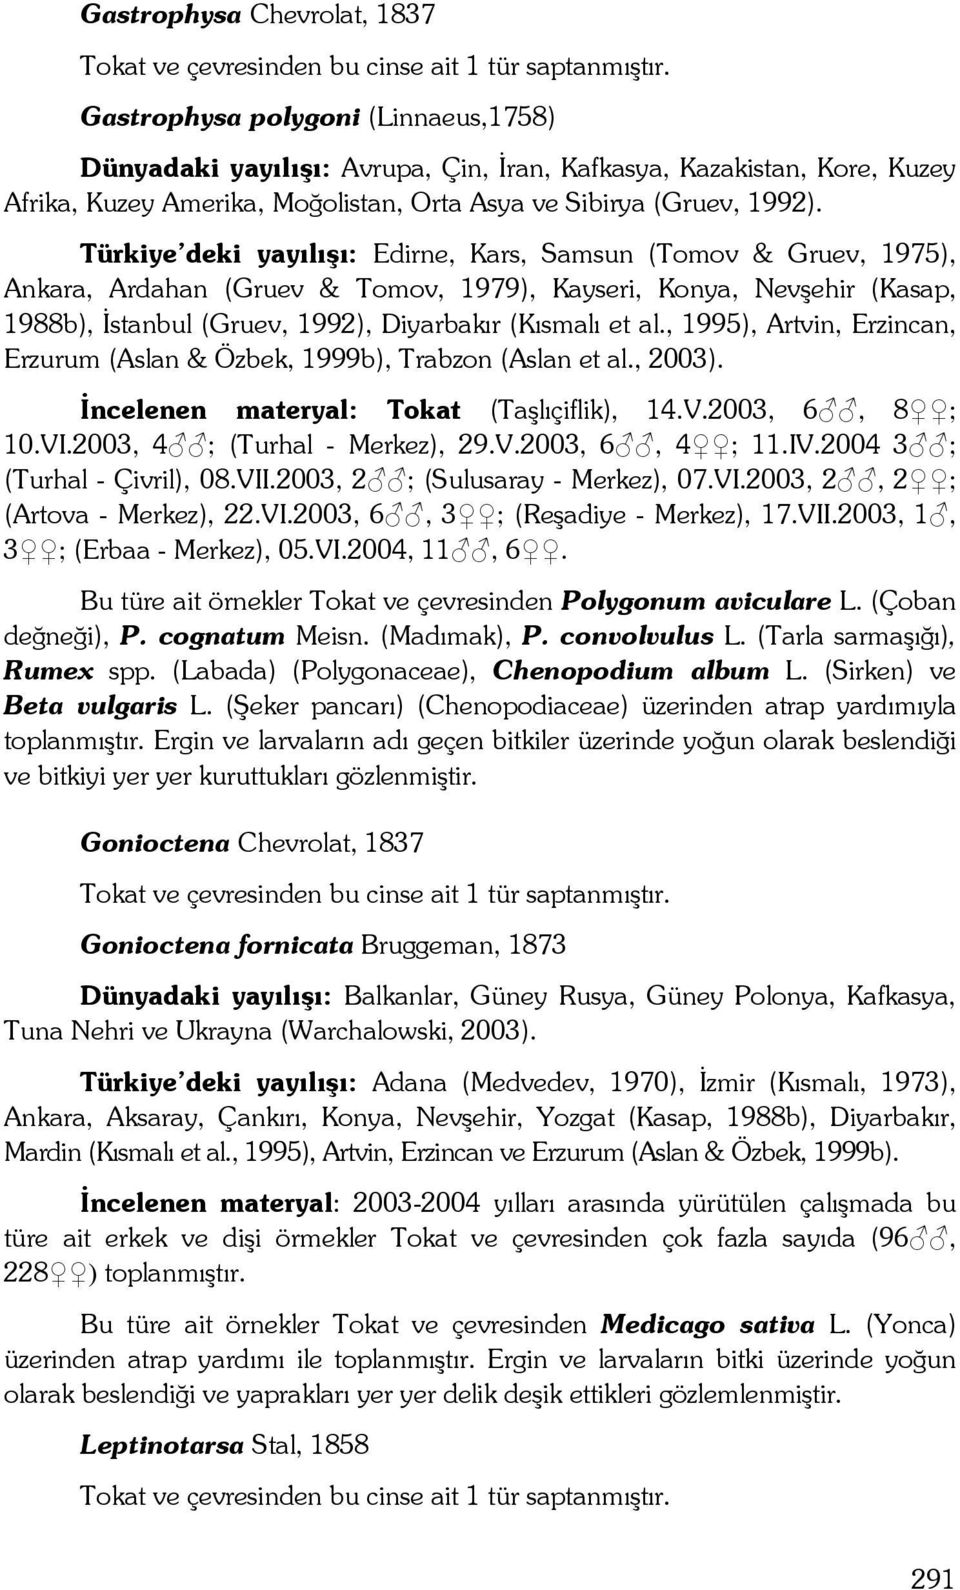 Türkiye deki yayılışı: Edirne, Kars, Samsun (Tomov & Gruev, 1975), Ankara, Ardahan (Gruev & Tomov, 1979), Kayseri, Konya, Nevşehir (Kasap, 1988b), İstanbul (Gruev, 1992), Diyarbakır (Kısmalı et al.